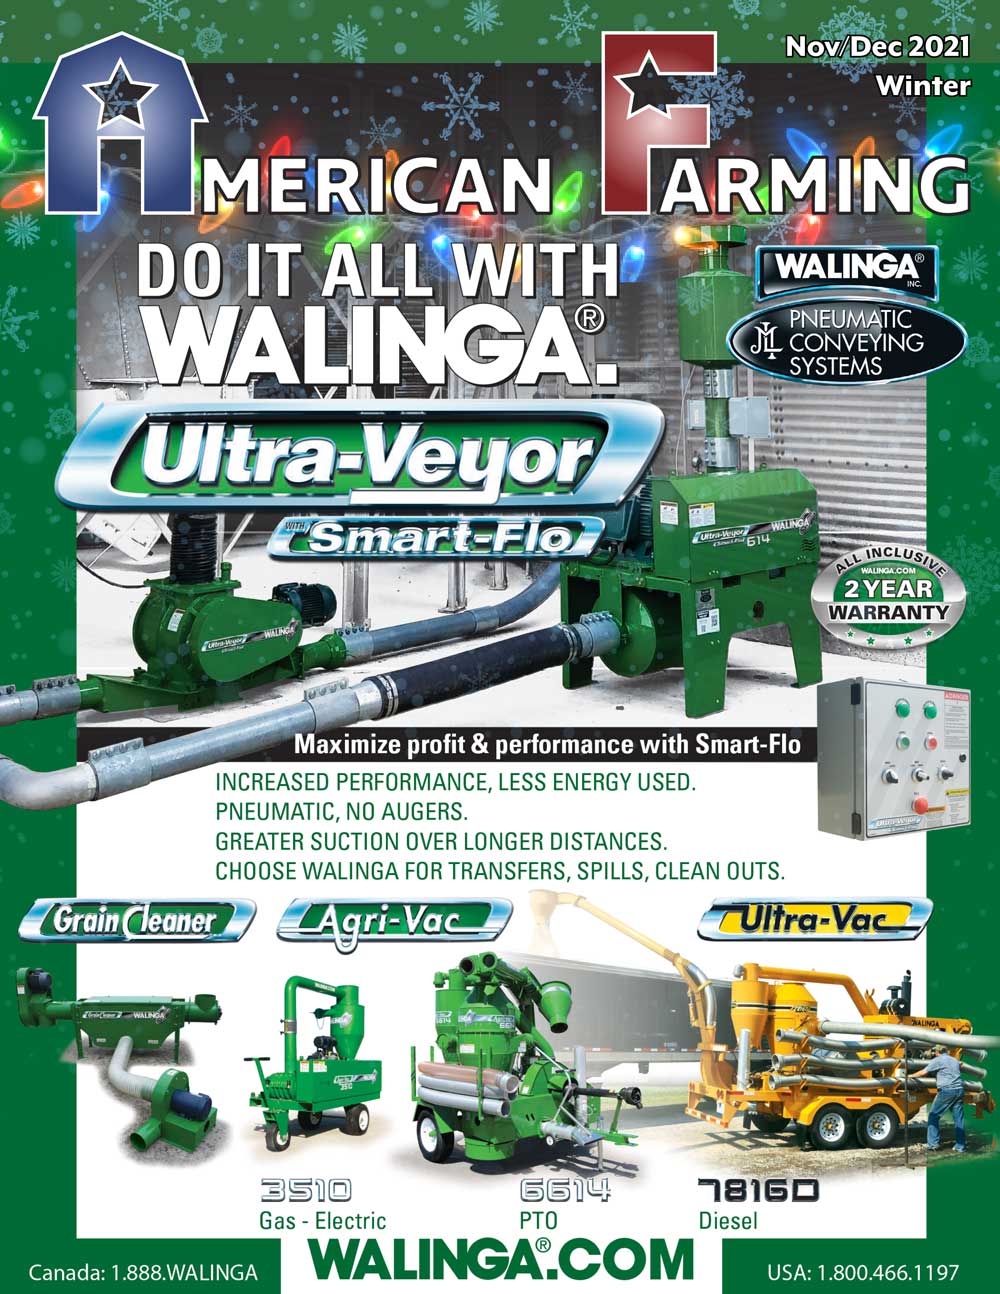 American Farming Publication winter2021 Cover walinga.com